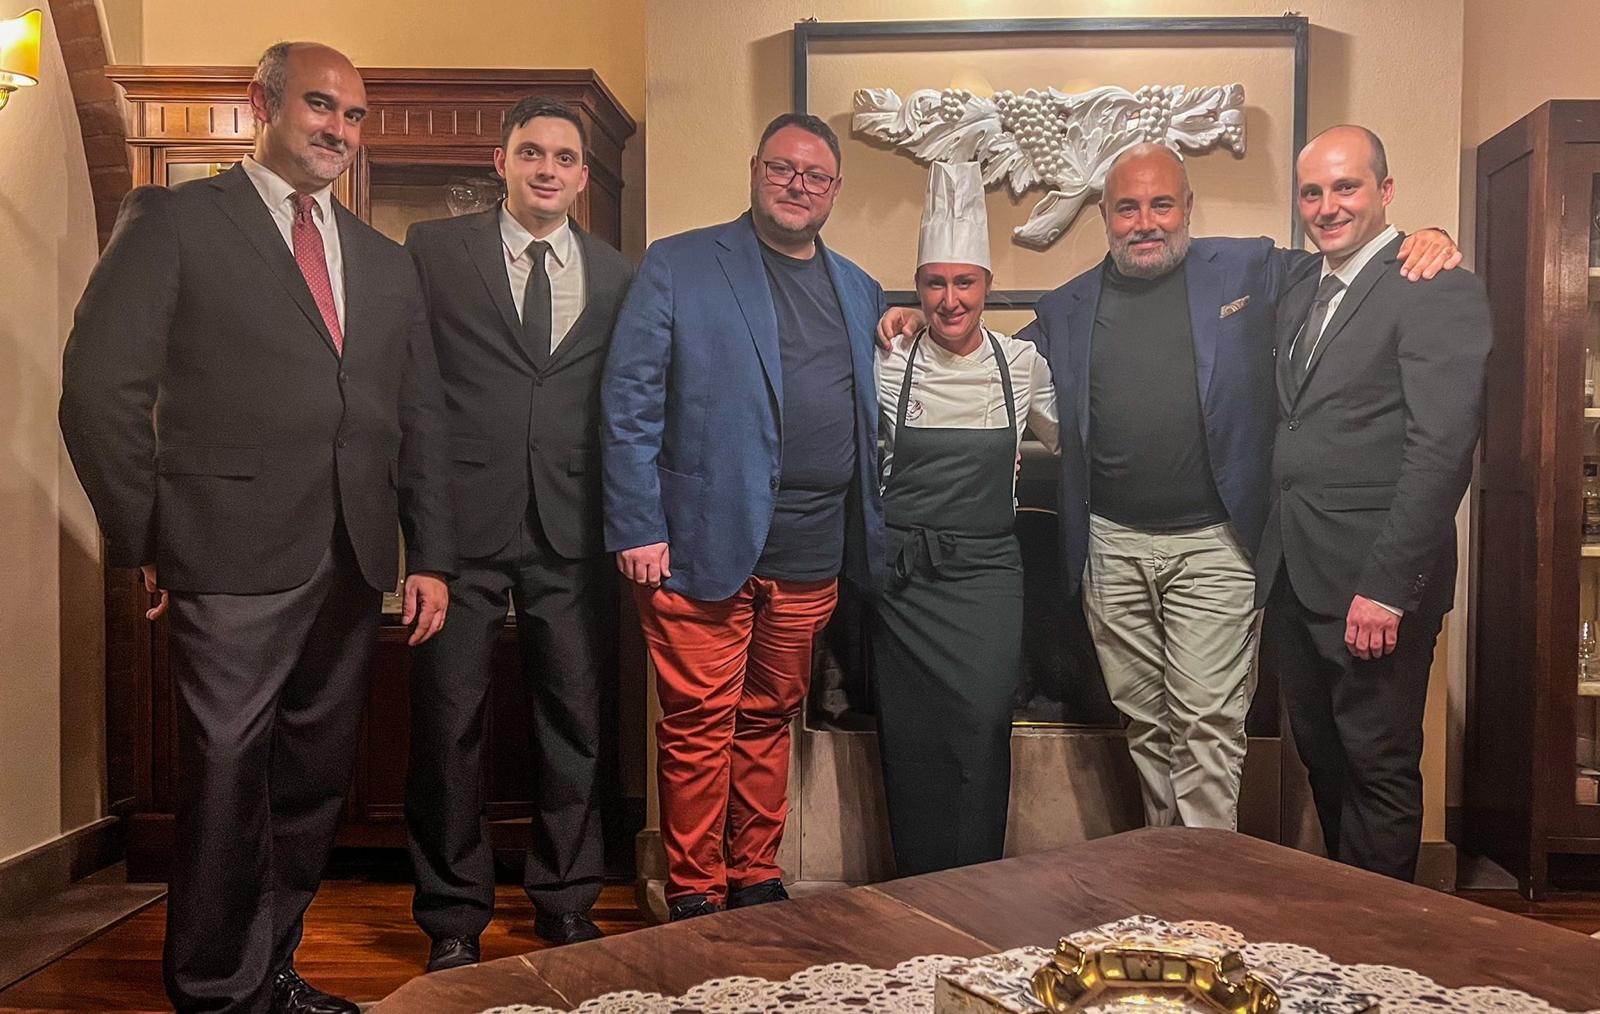 I Salotti del Patriarca: una cena toscana e il futuro visto da chef Maccari.